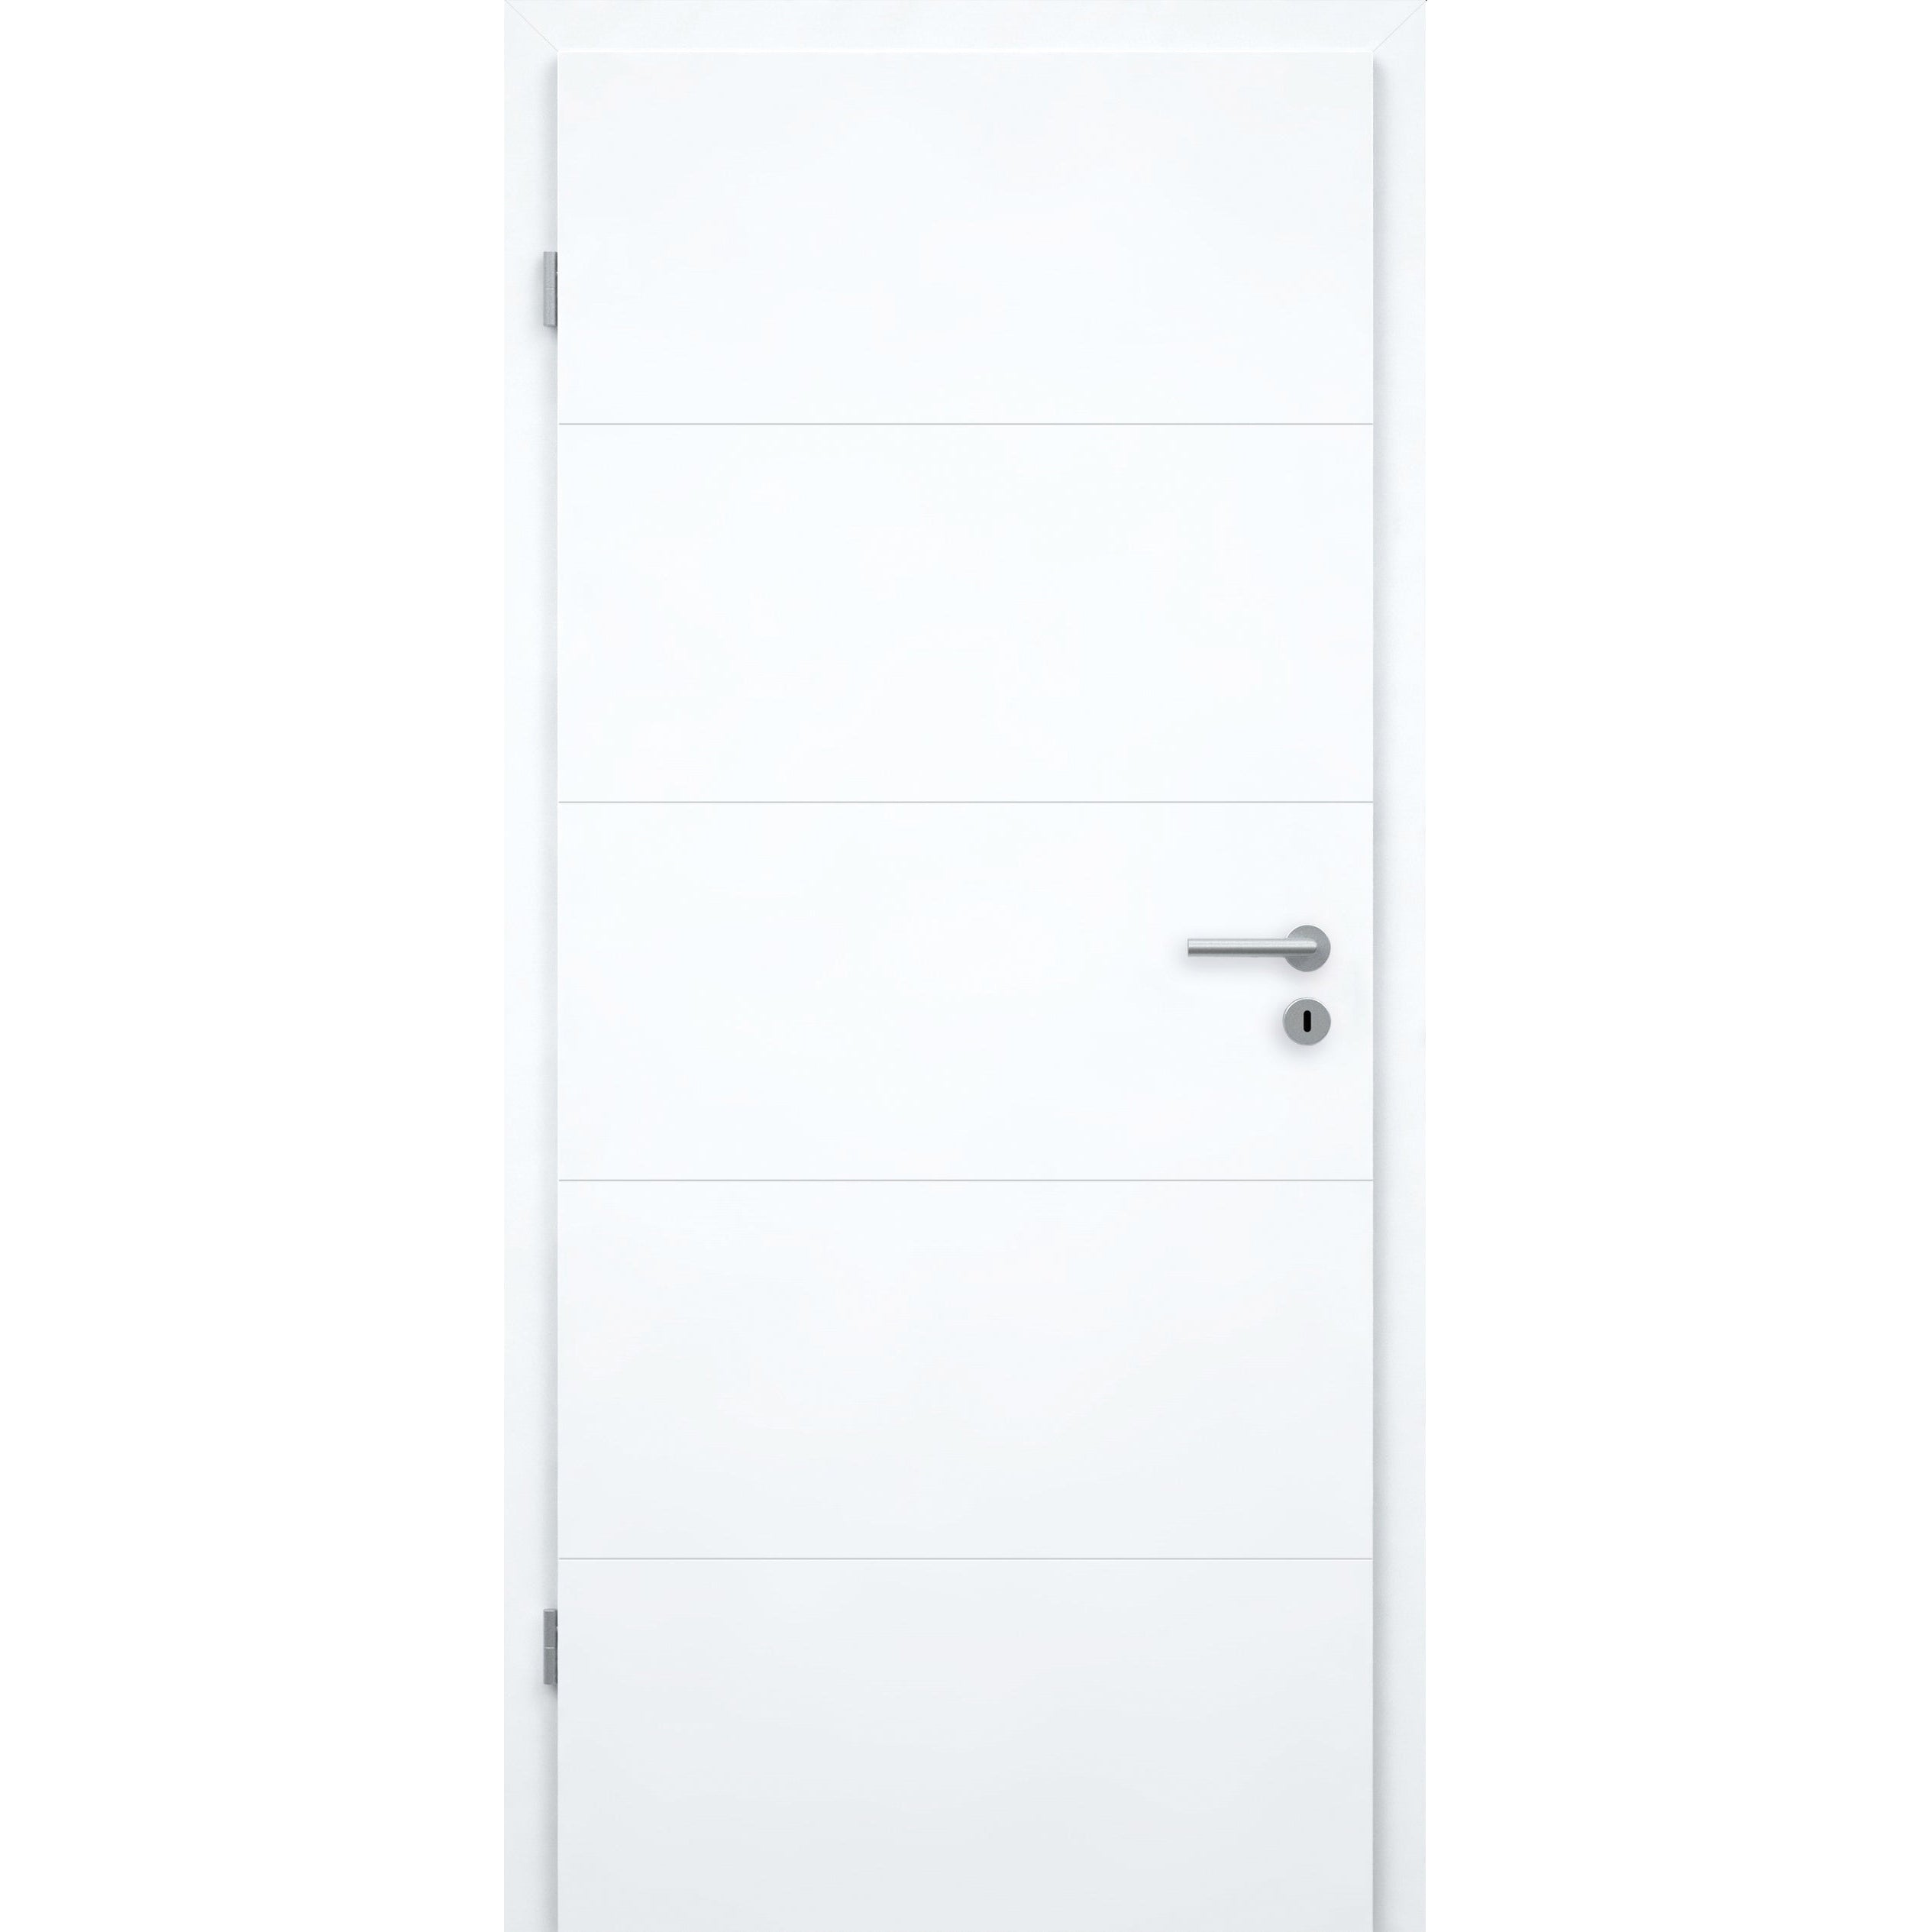 Zimmertür brillant-weiß modern mit 4 Rillen Designkante - Modell Designtür Q43